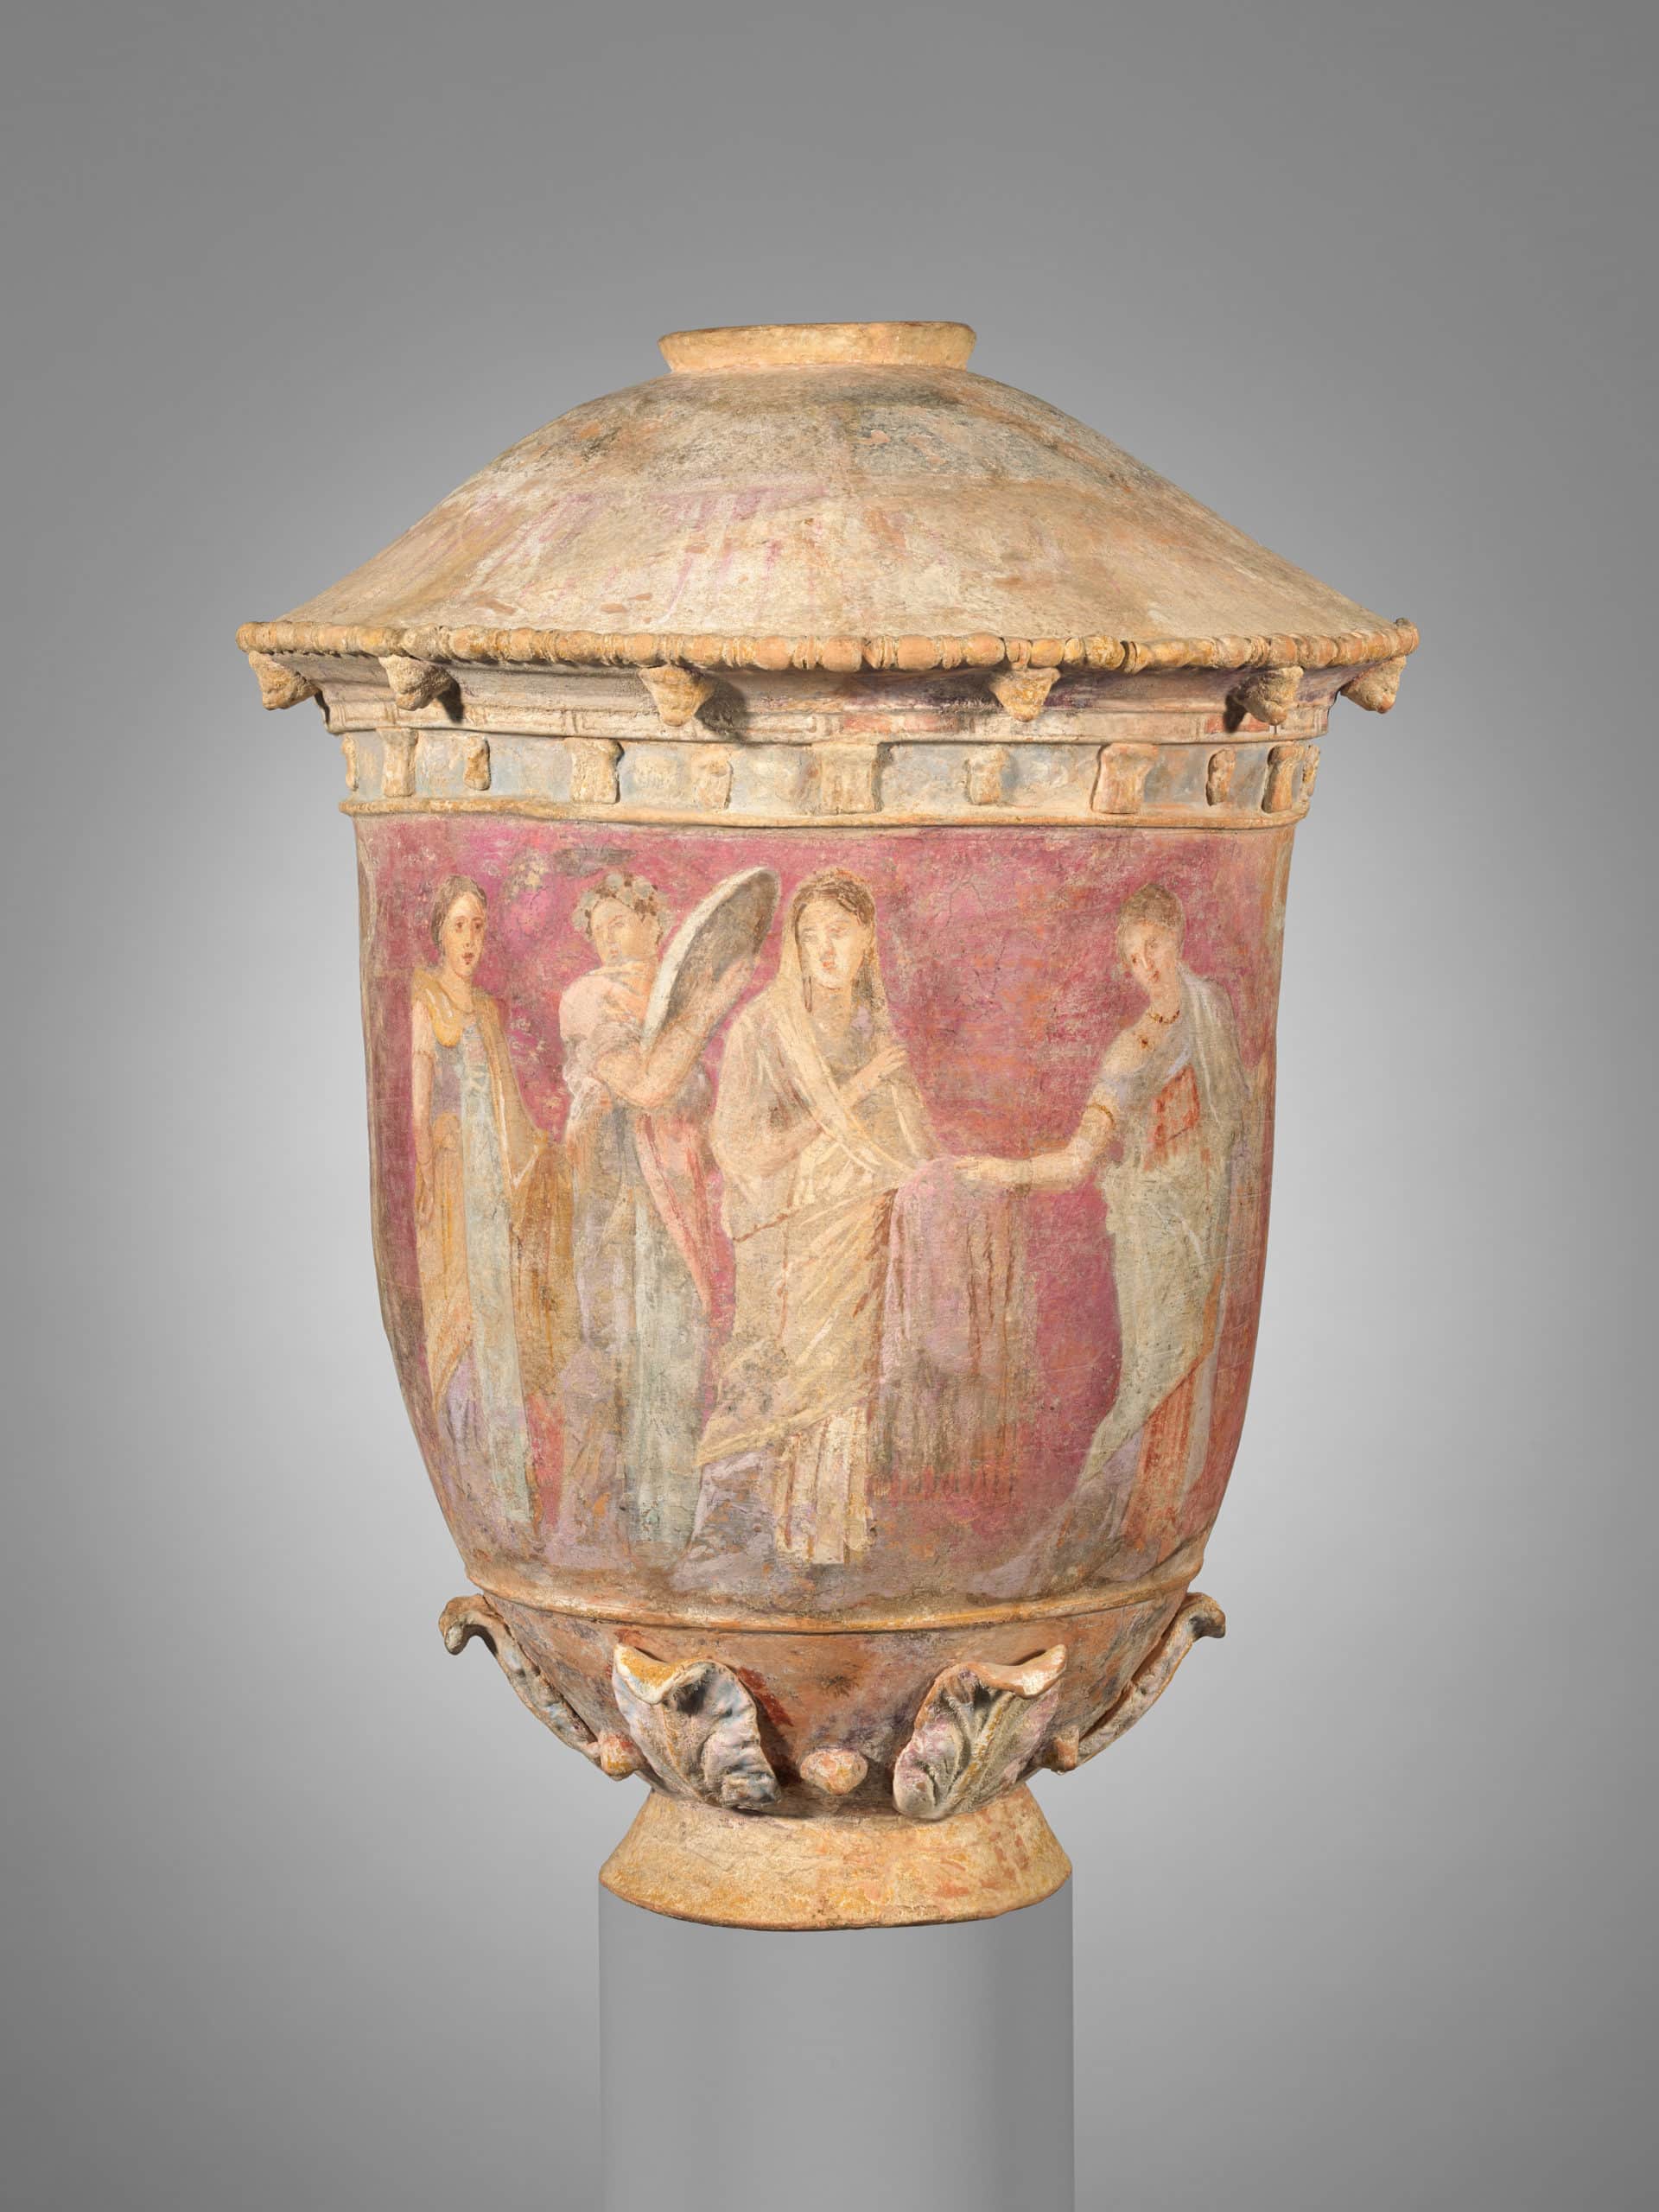 Terrakotta-Vase aus dem antiken Griechenland mit deutlich sichtbarer Farbbemalung. (Quelle: Metropolitan Museum of Art)